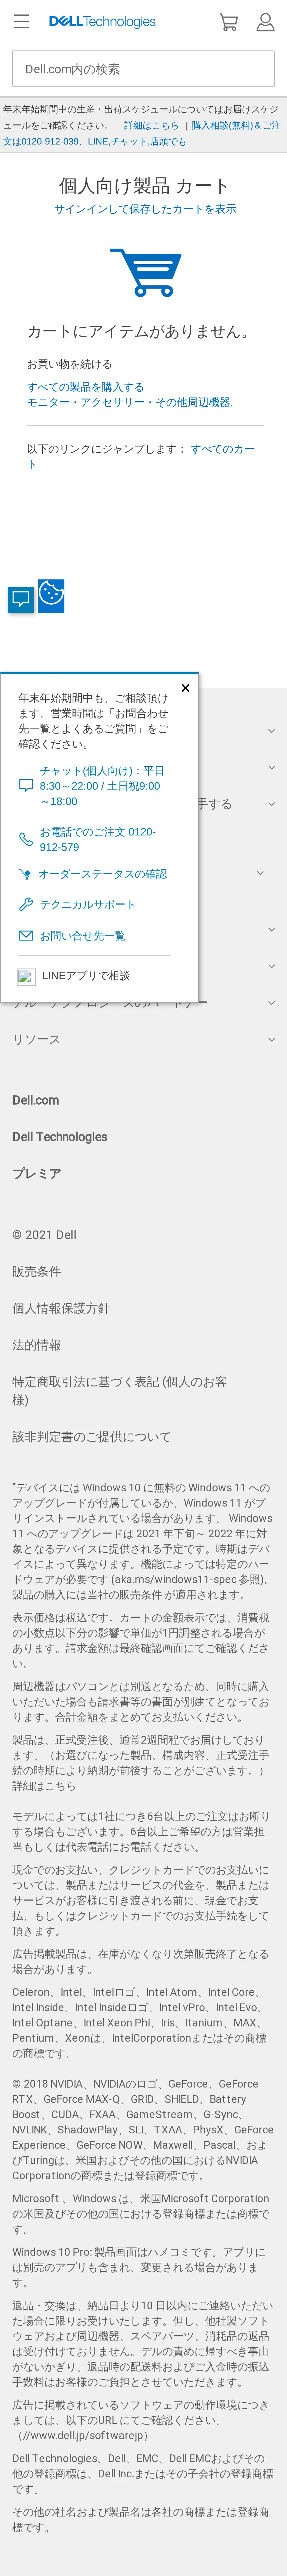 キャプチャ画面 会社名:デル株式会社プロジェクト名:DELL JAPAN(個人向け) 画面名:カート確認 デバイス名:SPカテゴリ:EC・オンラインショップタグ:SP,カート確認